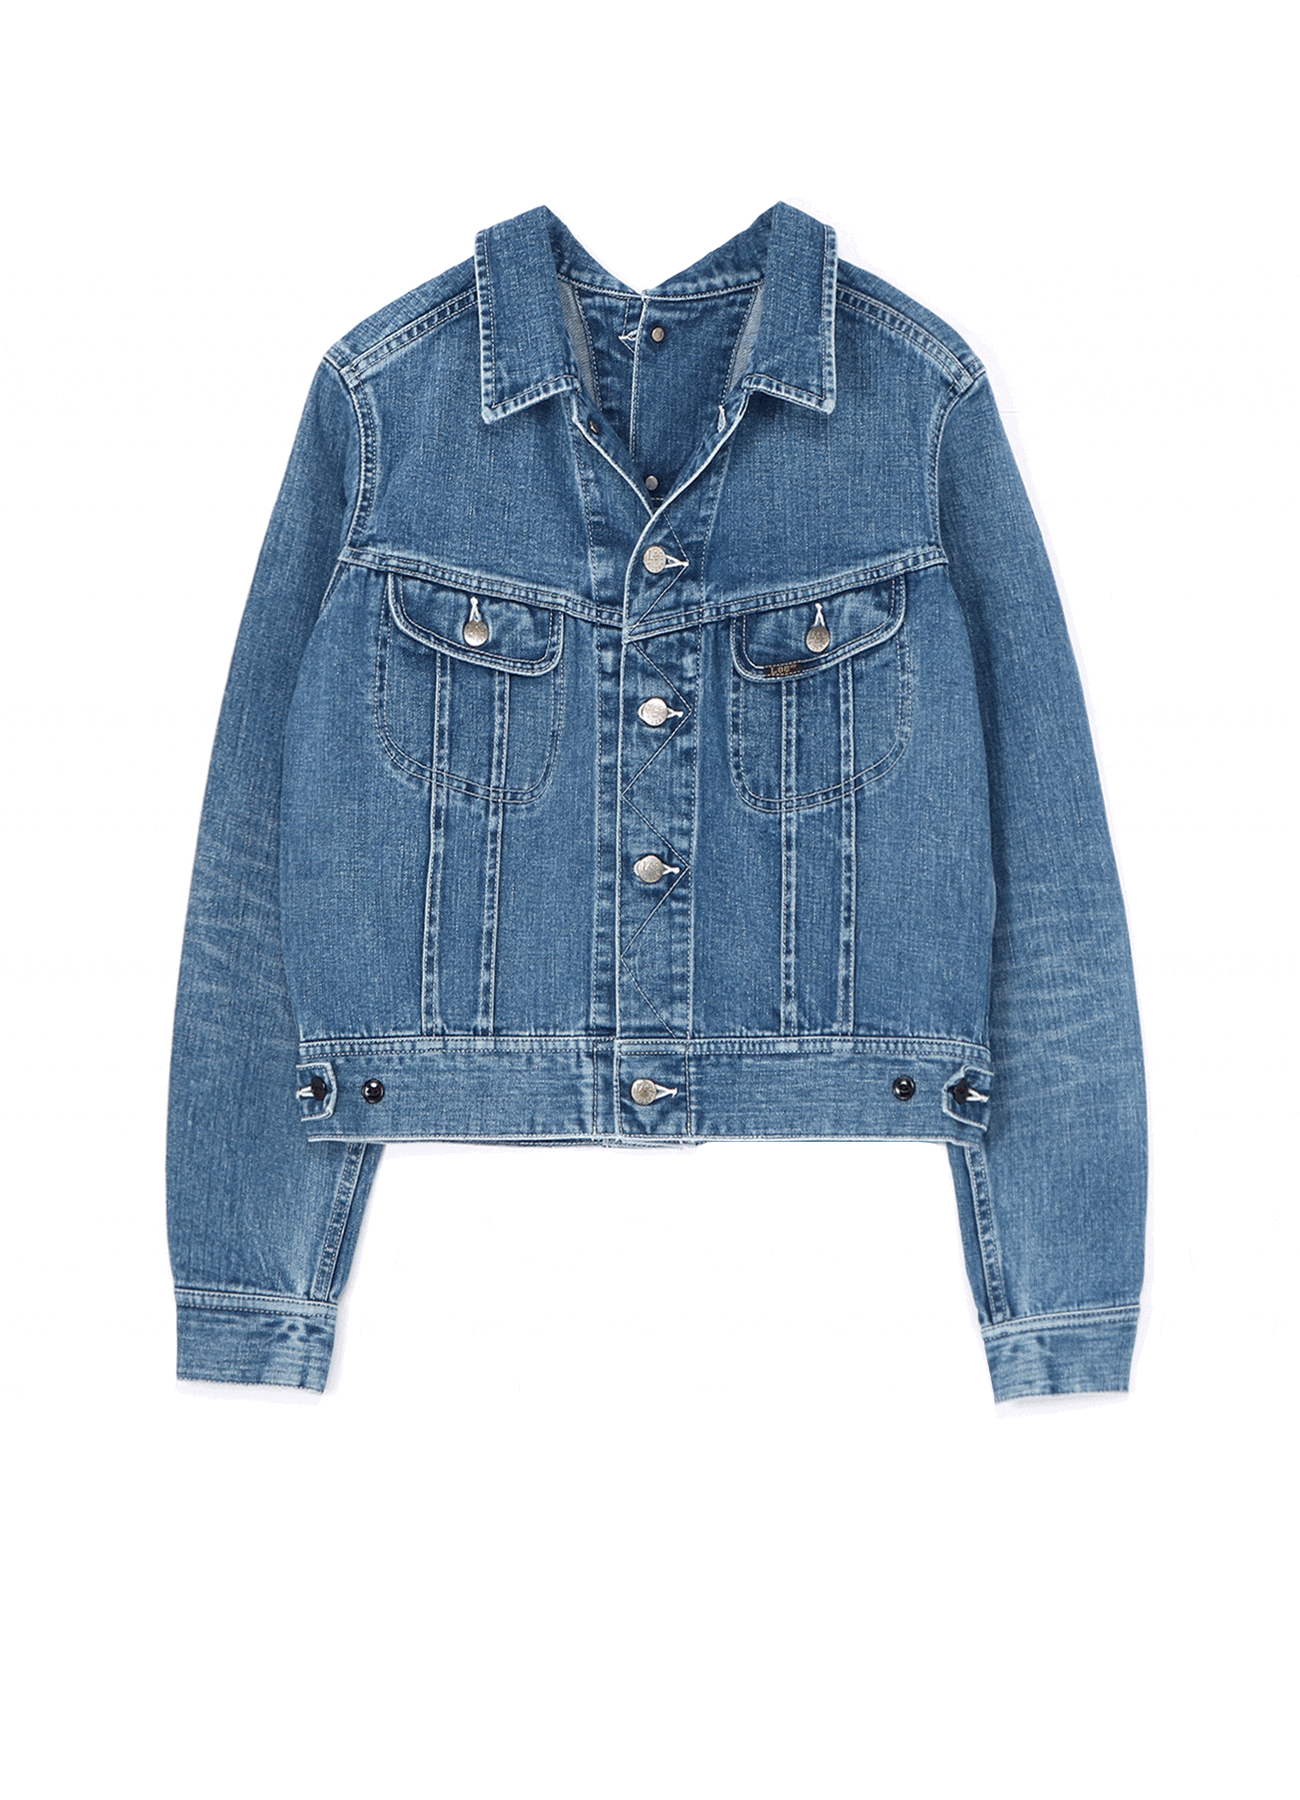 LIMI feu×Lee Reversible Jacket(S Blue): Vintage 1.1｜THE SHOP 